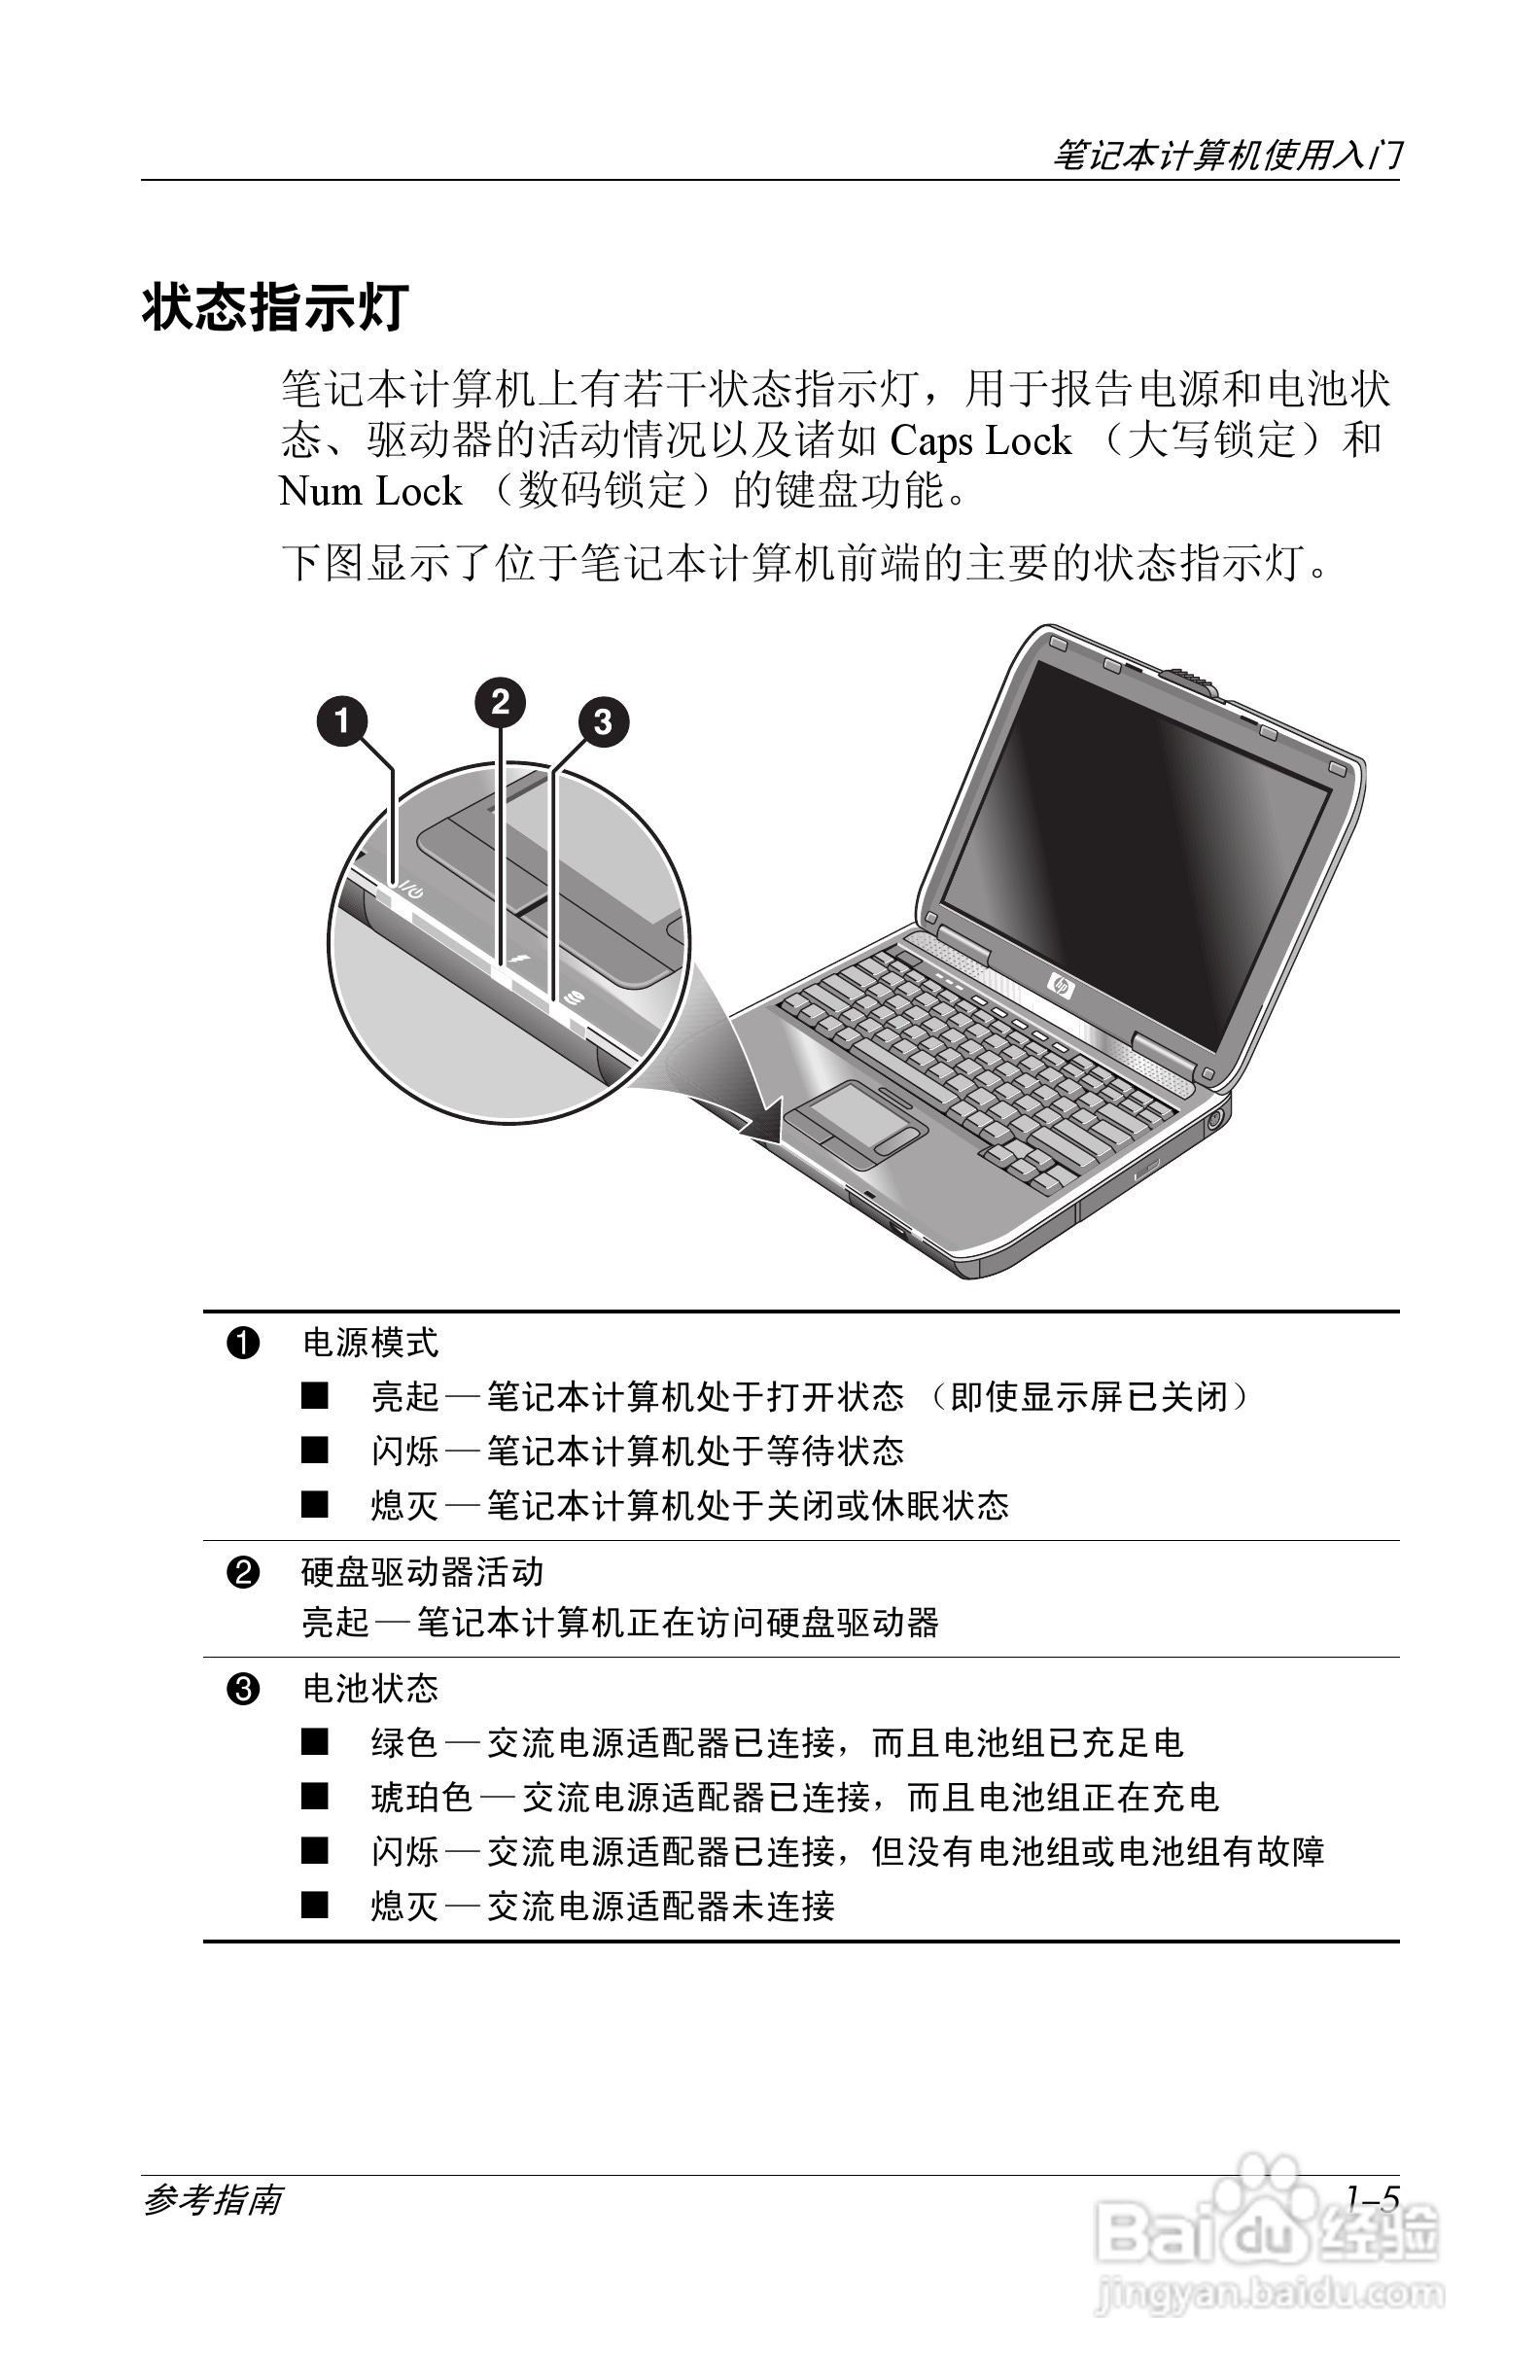 惠普(康柏) Compaq Evo N600c笔记本电脑说明书:[1]-百度经验